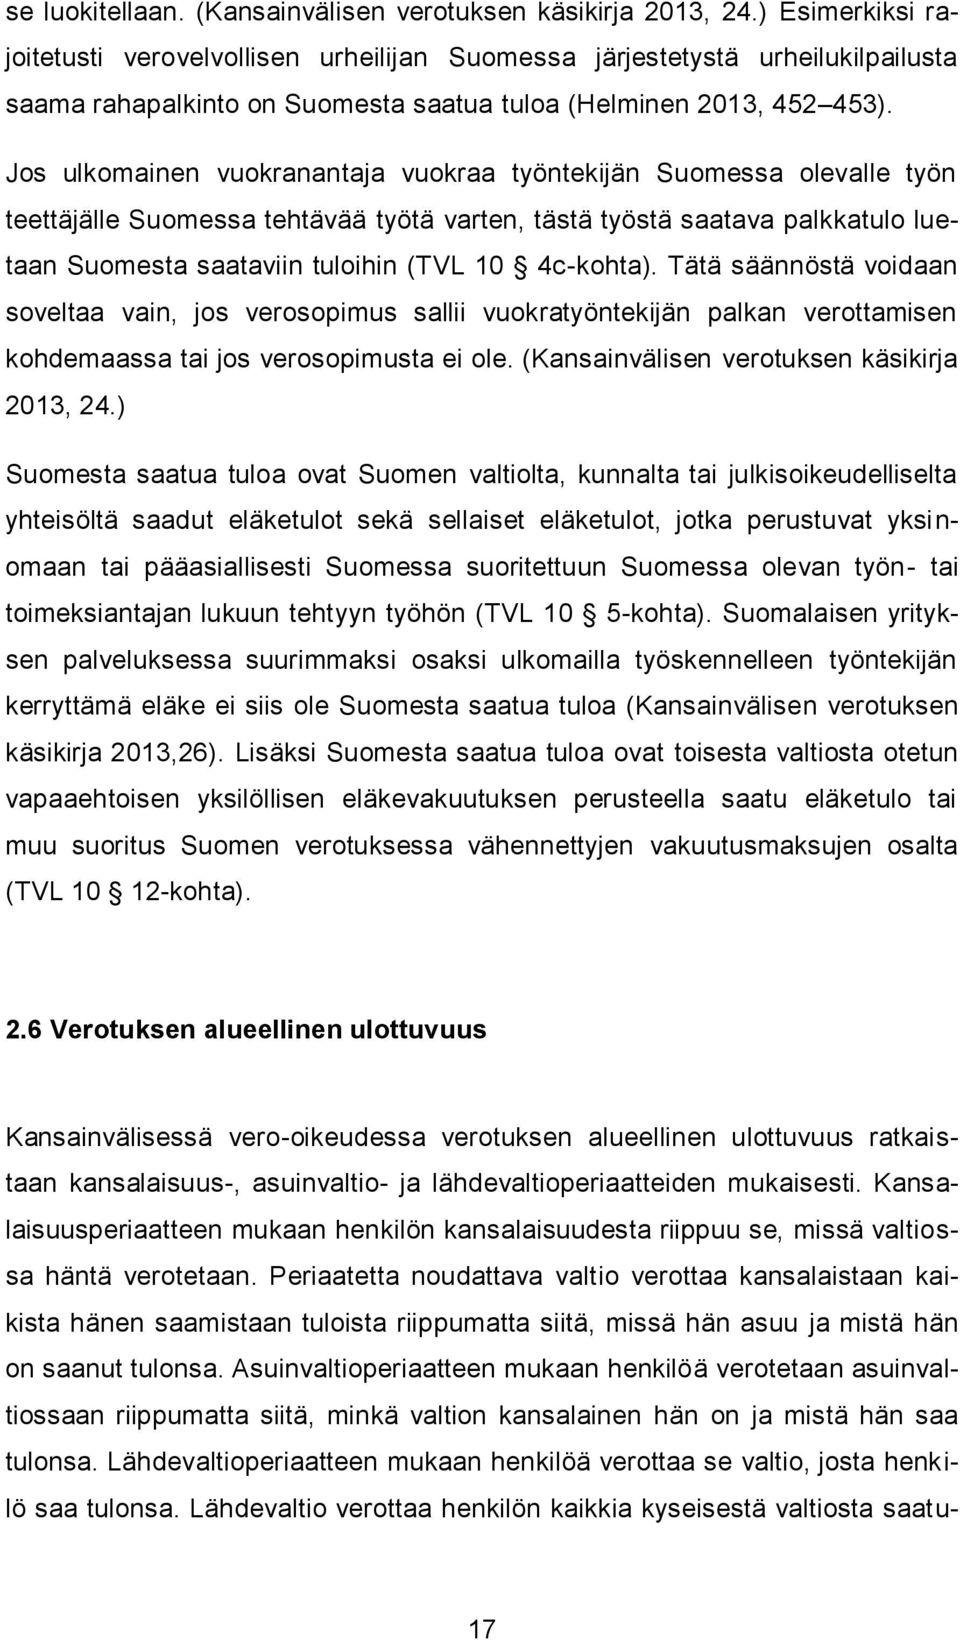 Jos ulkomainen vuokranantaja vuokraa työntekijän Suomessa olevalle työn teettäjälle Suomessa tehtävää työtä varten, tästä työstä saatava palkkatulo luetaan Suomesta saataviin tuloihin (TVL 10